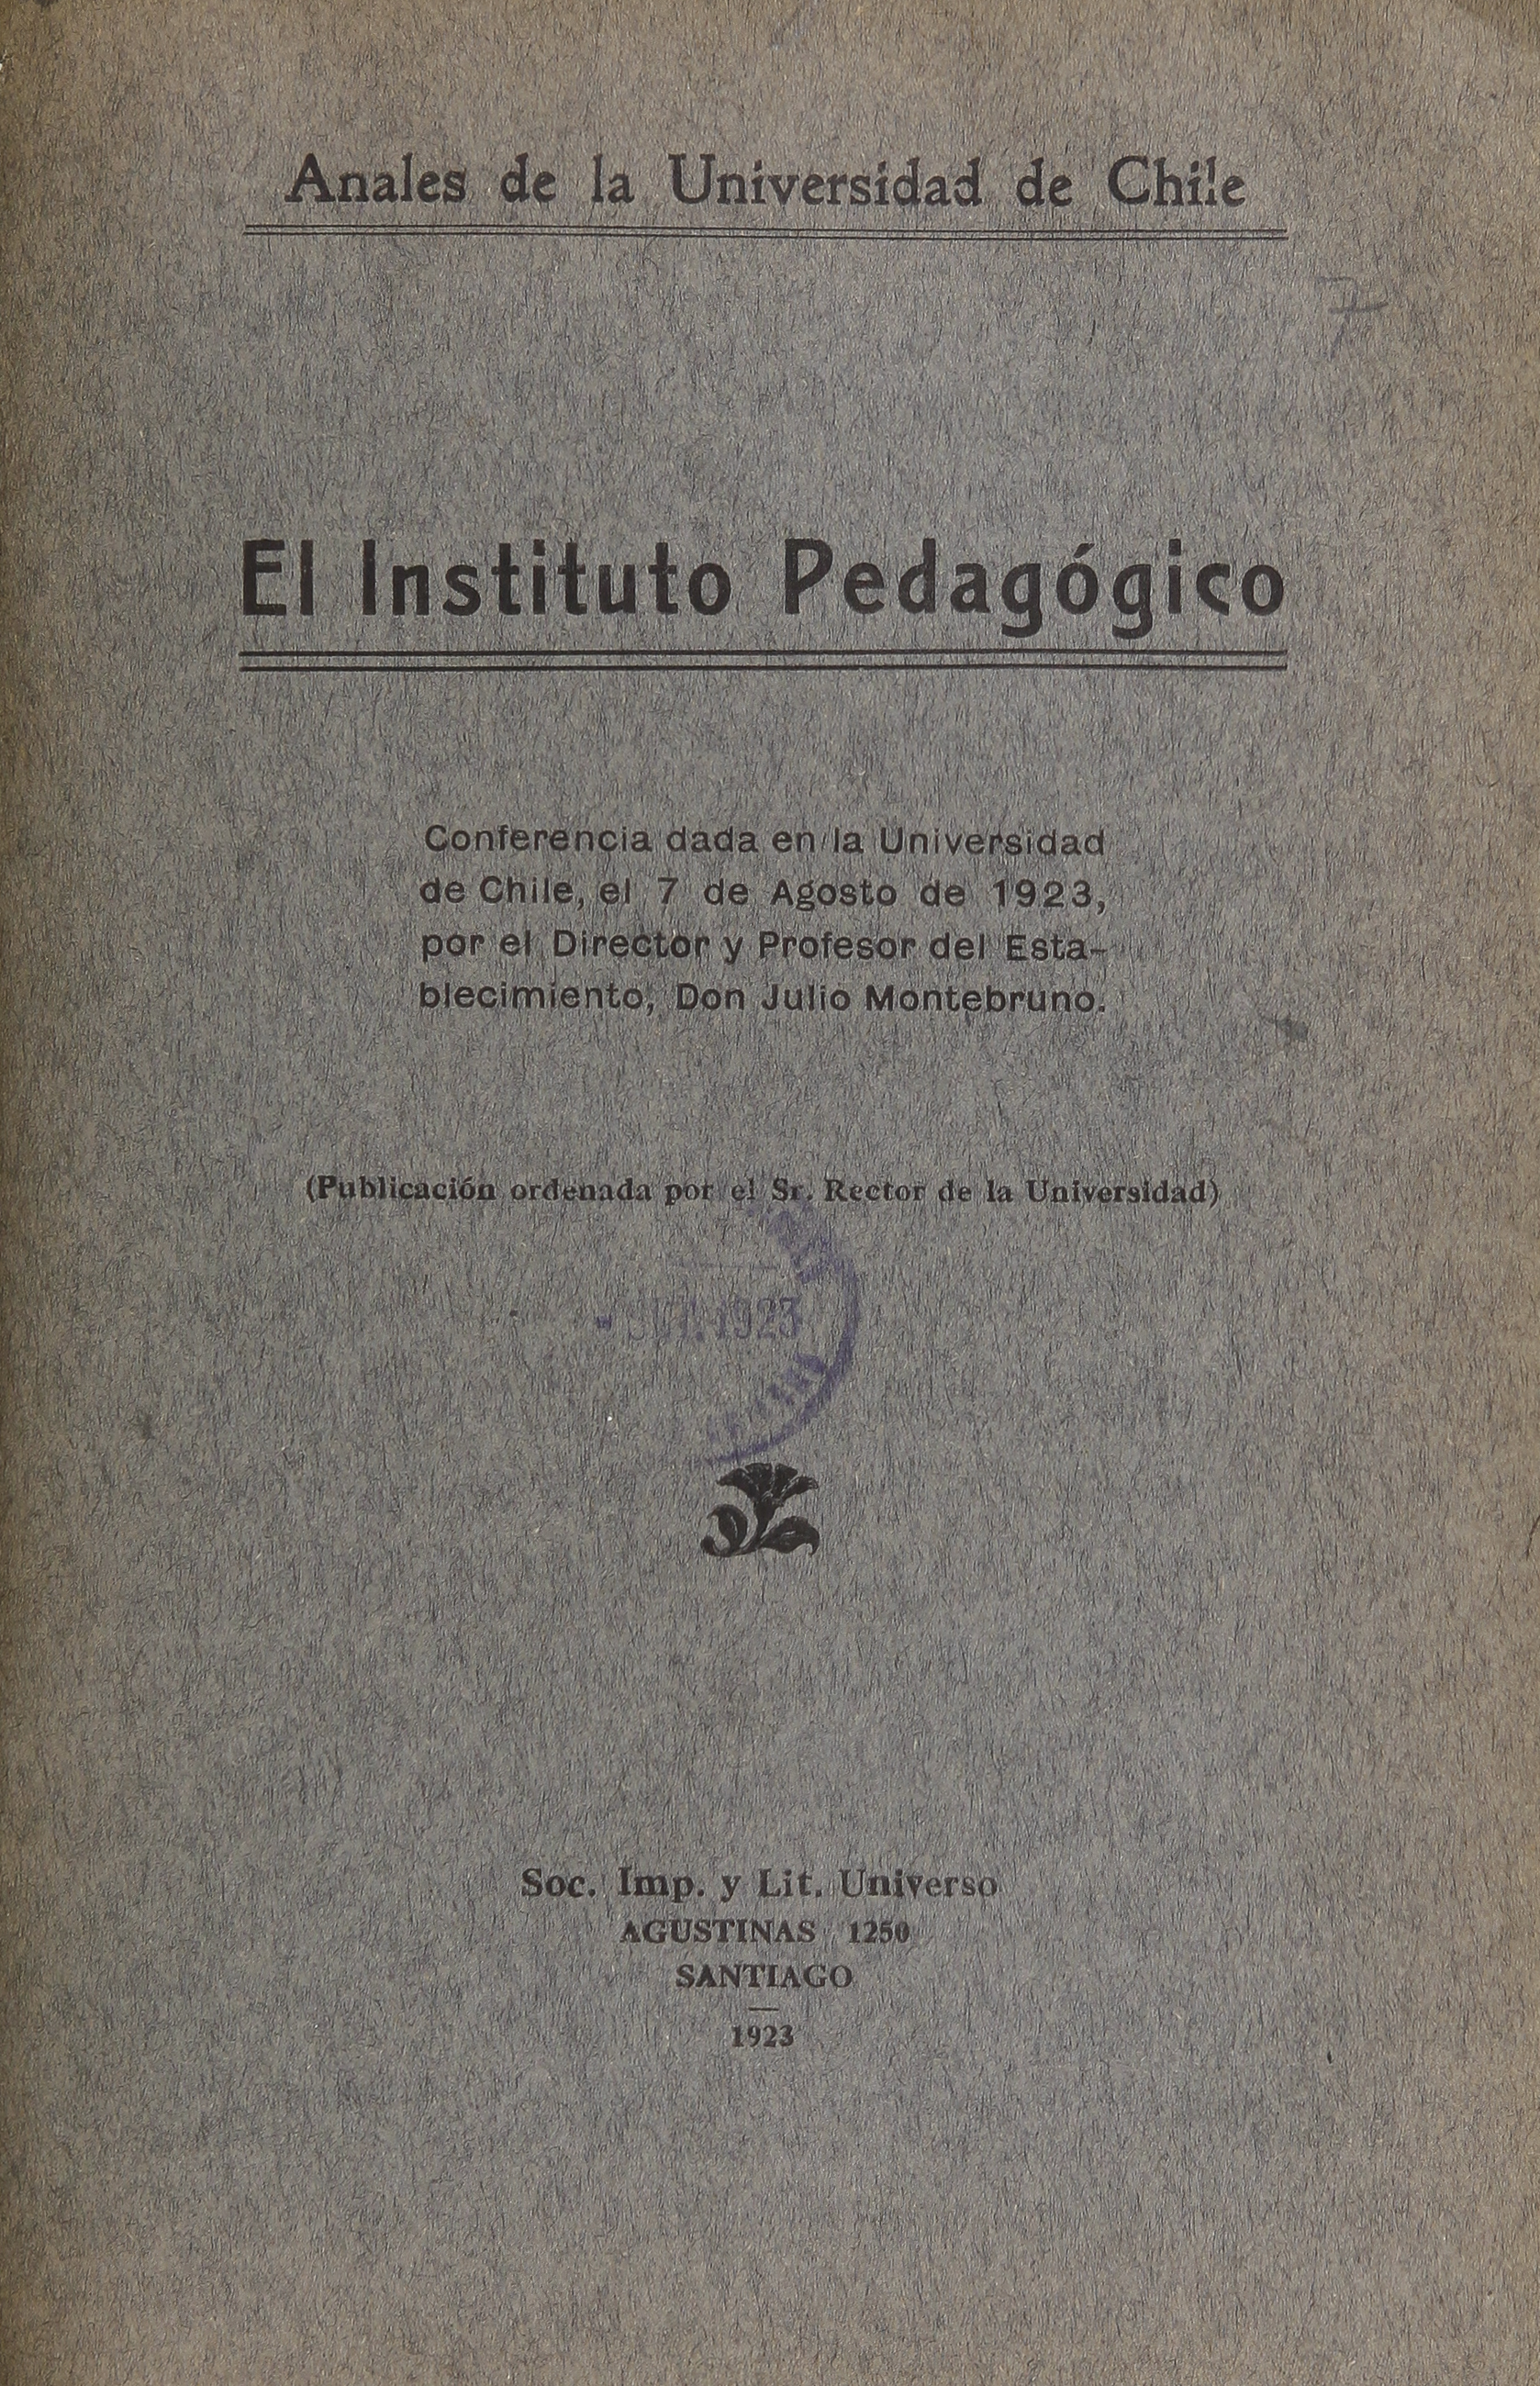 El Instítuto Pedagógico :Conferencia dada en la Universidad de Chile, el 7 de Agosto de 1923, por el Director y Profesor del establecimiento Don Julio Montebruno.